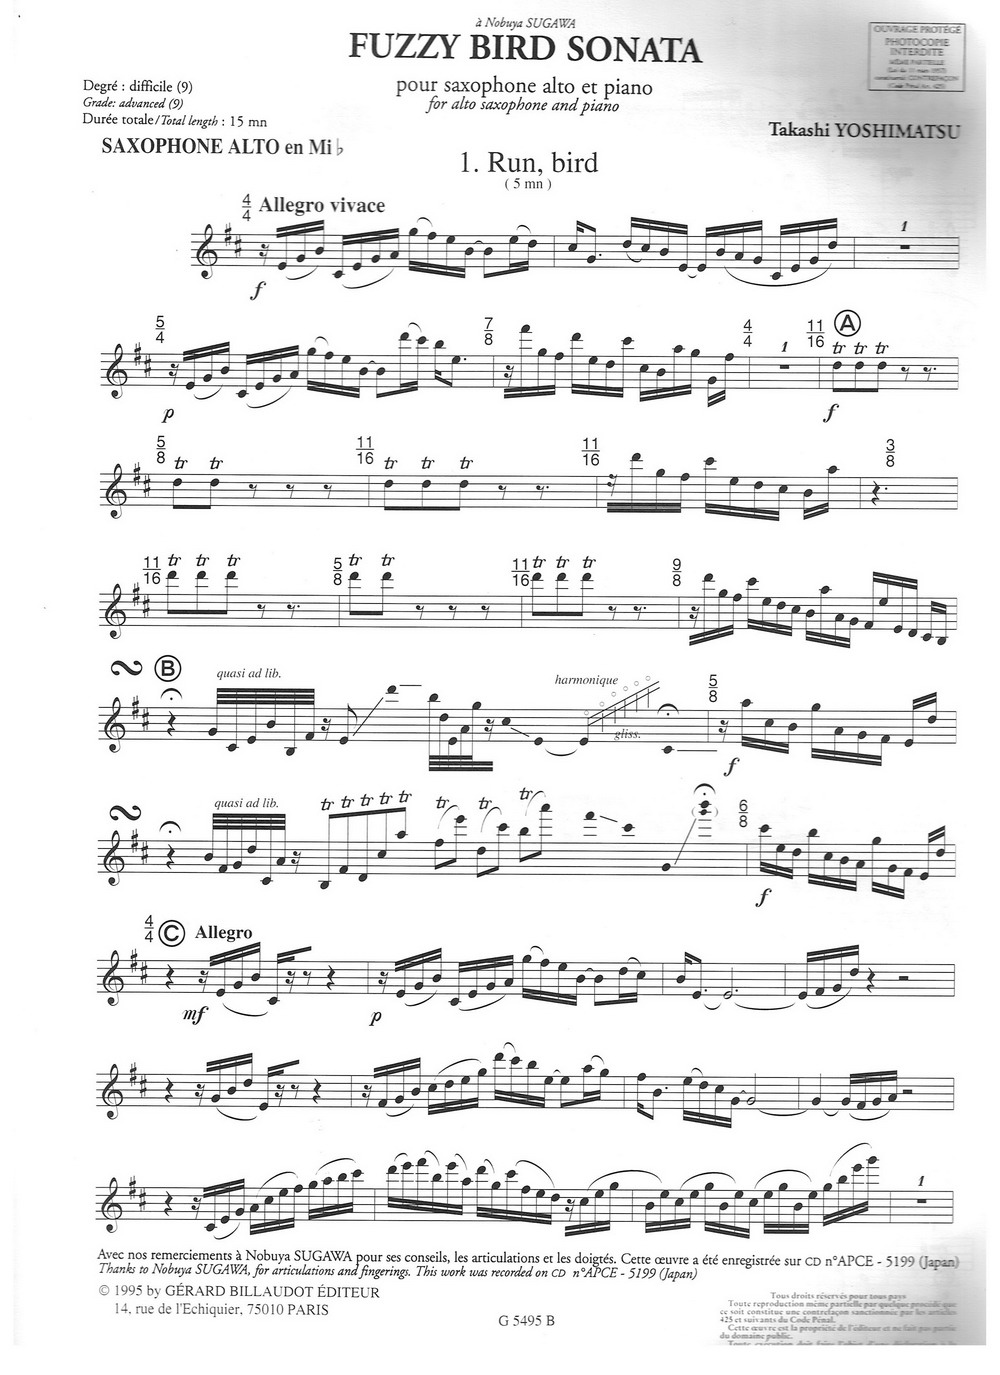 须川展也的《Fuzzy Bird Sonata》(Run, Bird)毛绒鸟奏鸣曲一萨克斯曲谱（图1）